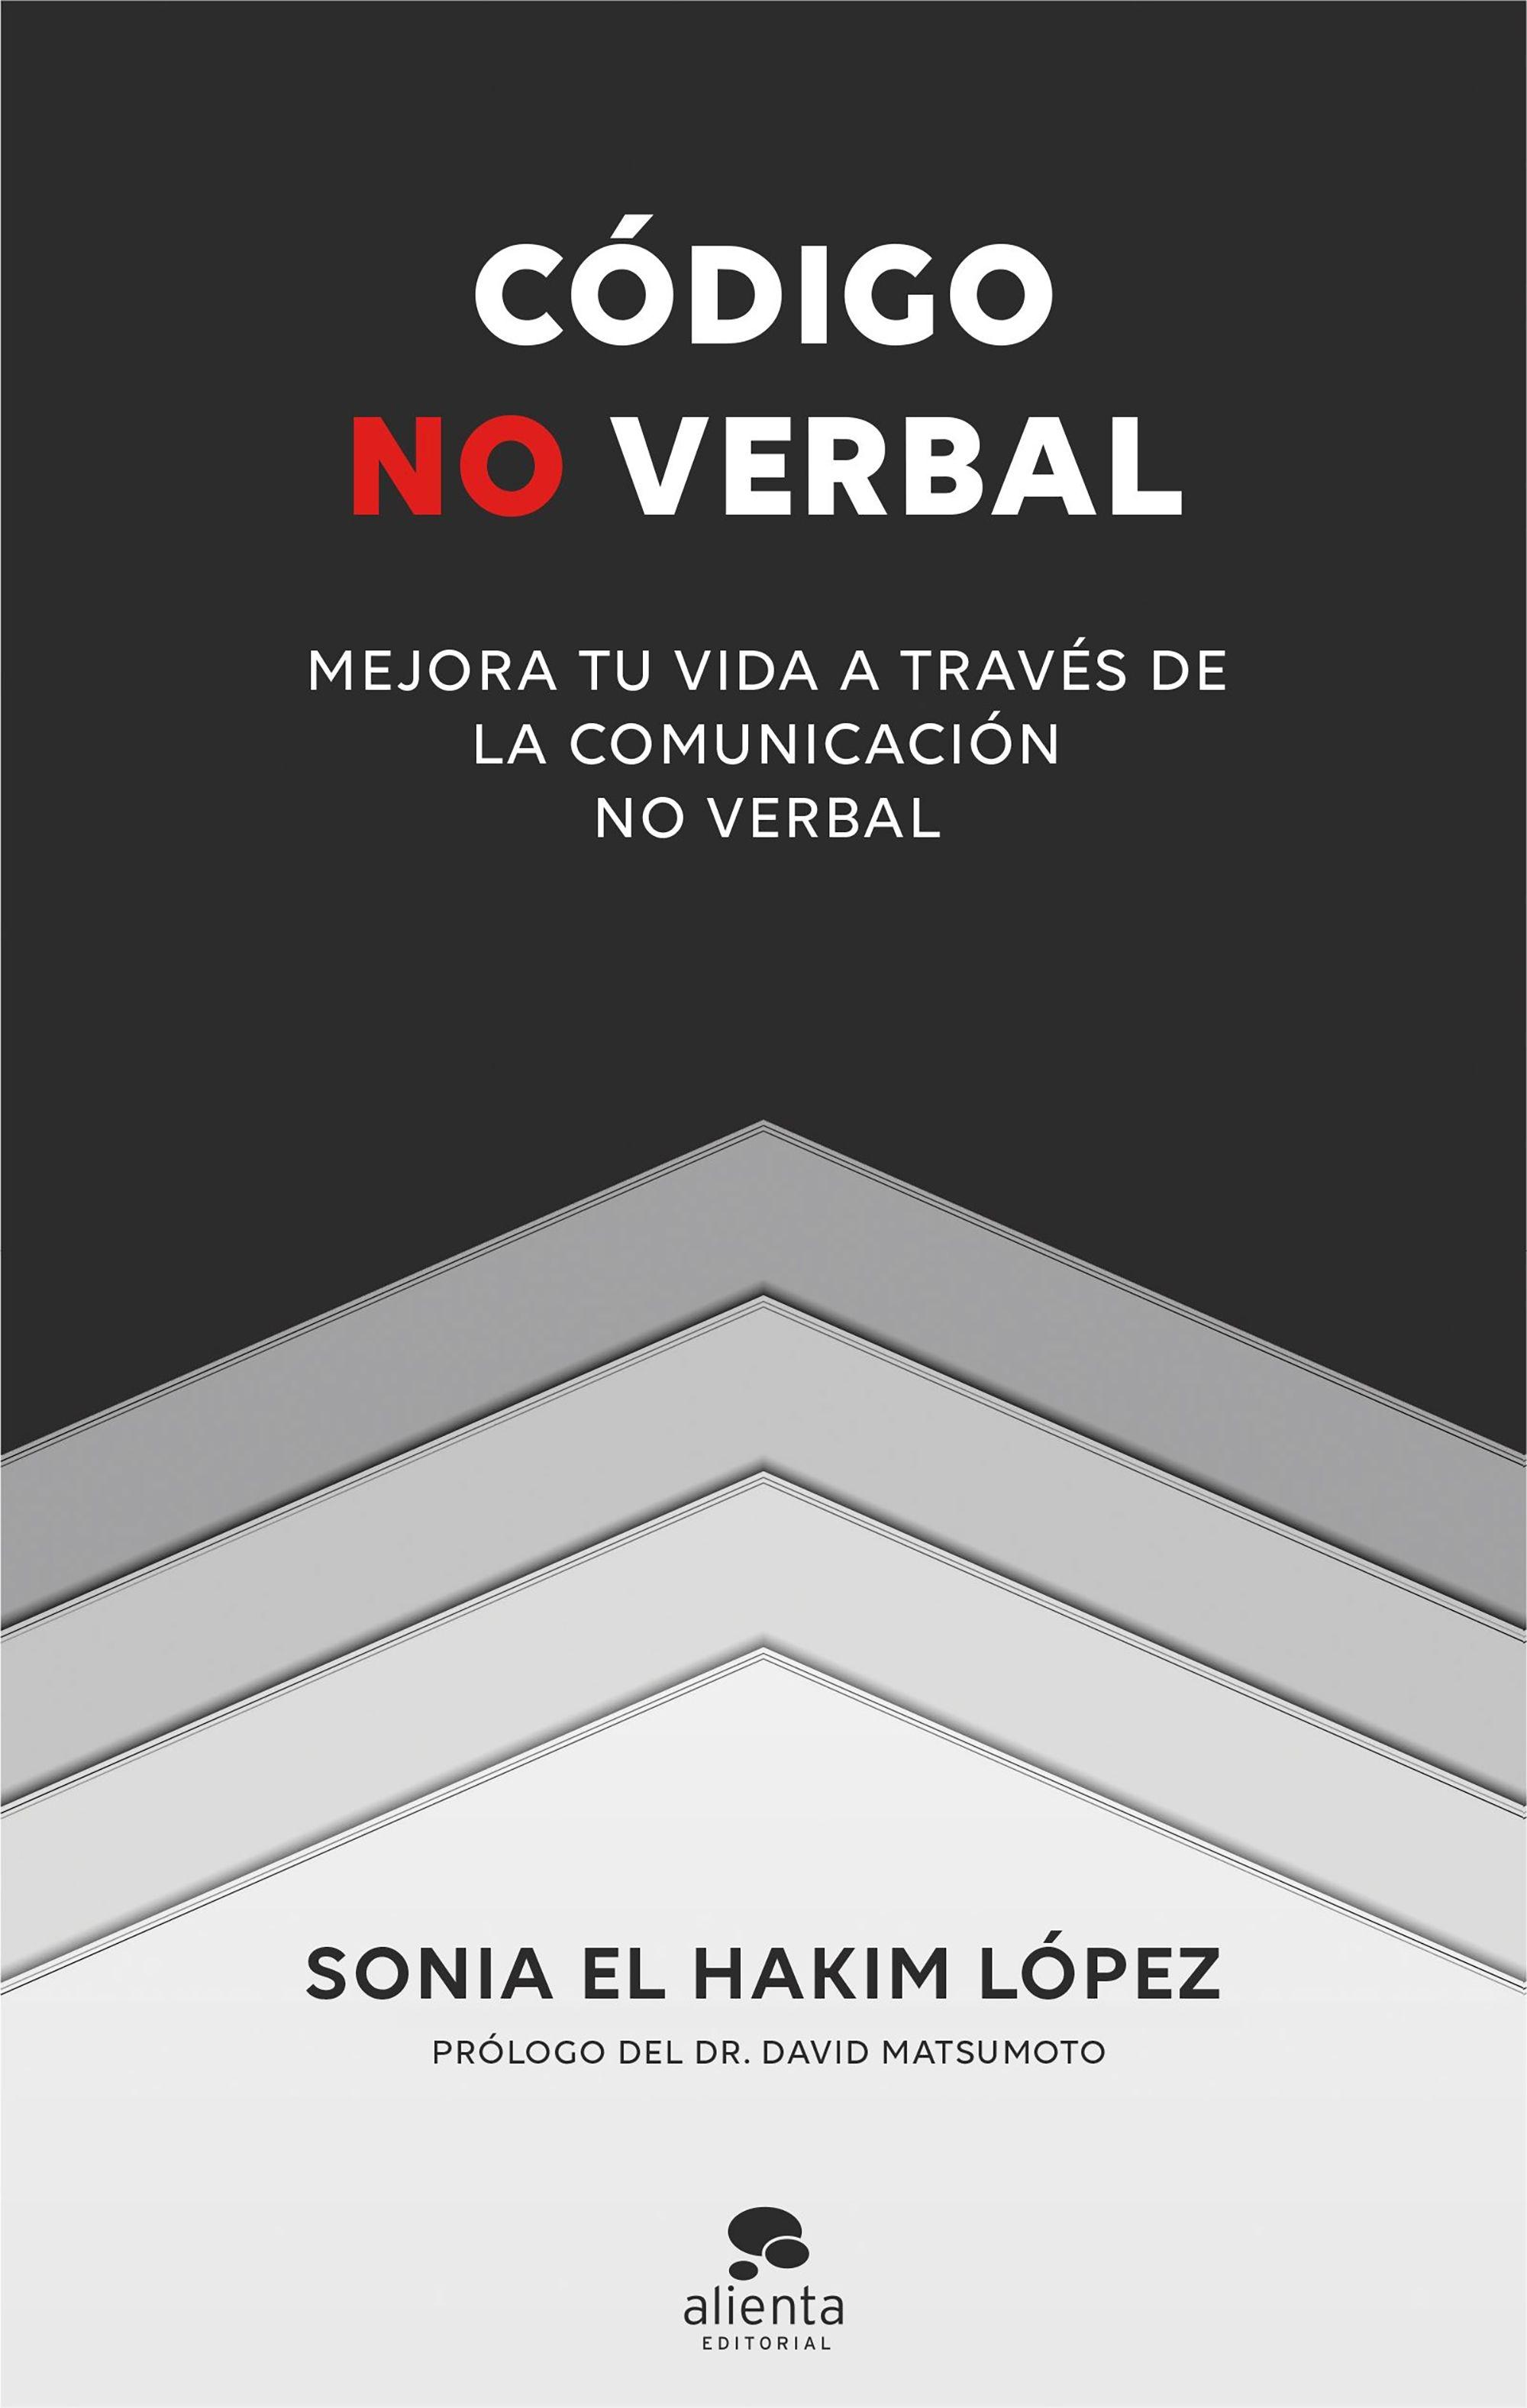 Código no verbal "Mejora tu vida a través de la comunicación no verbal"